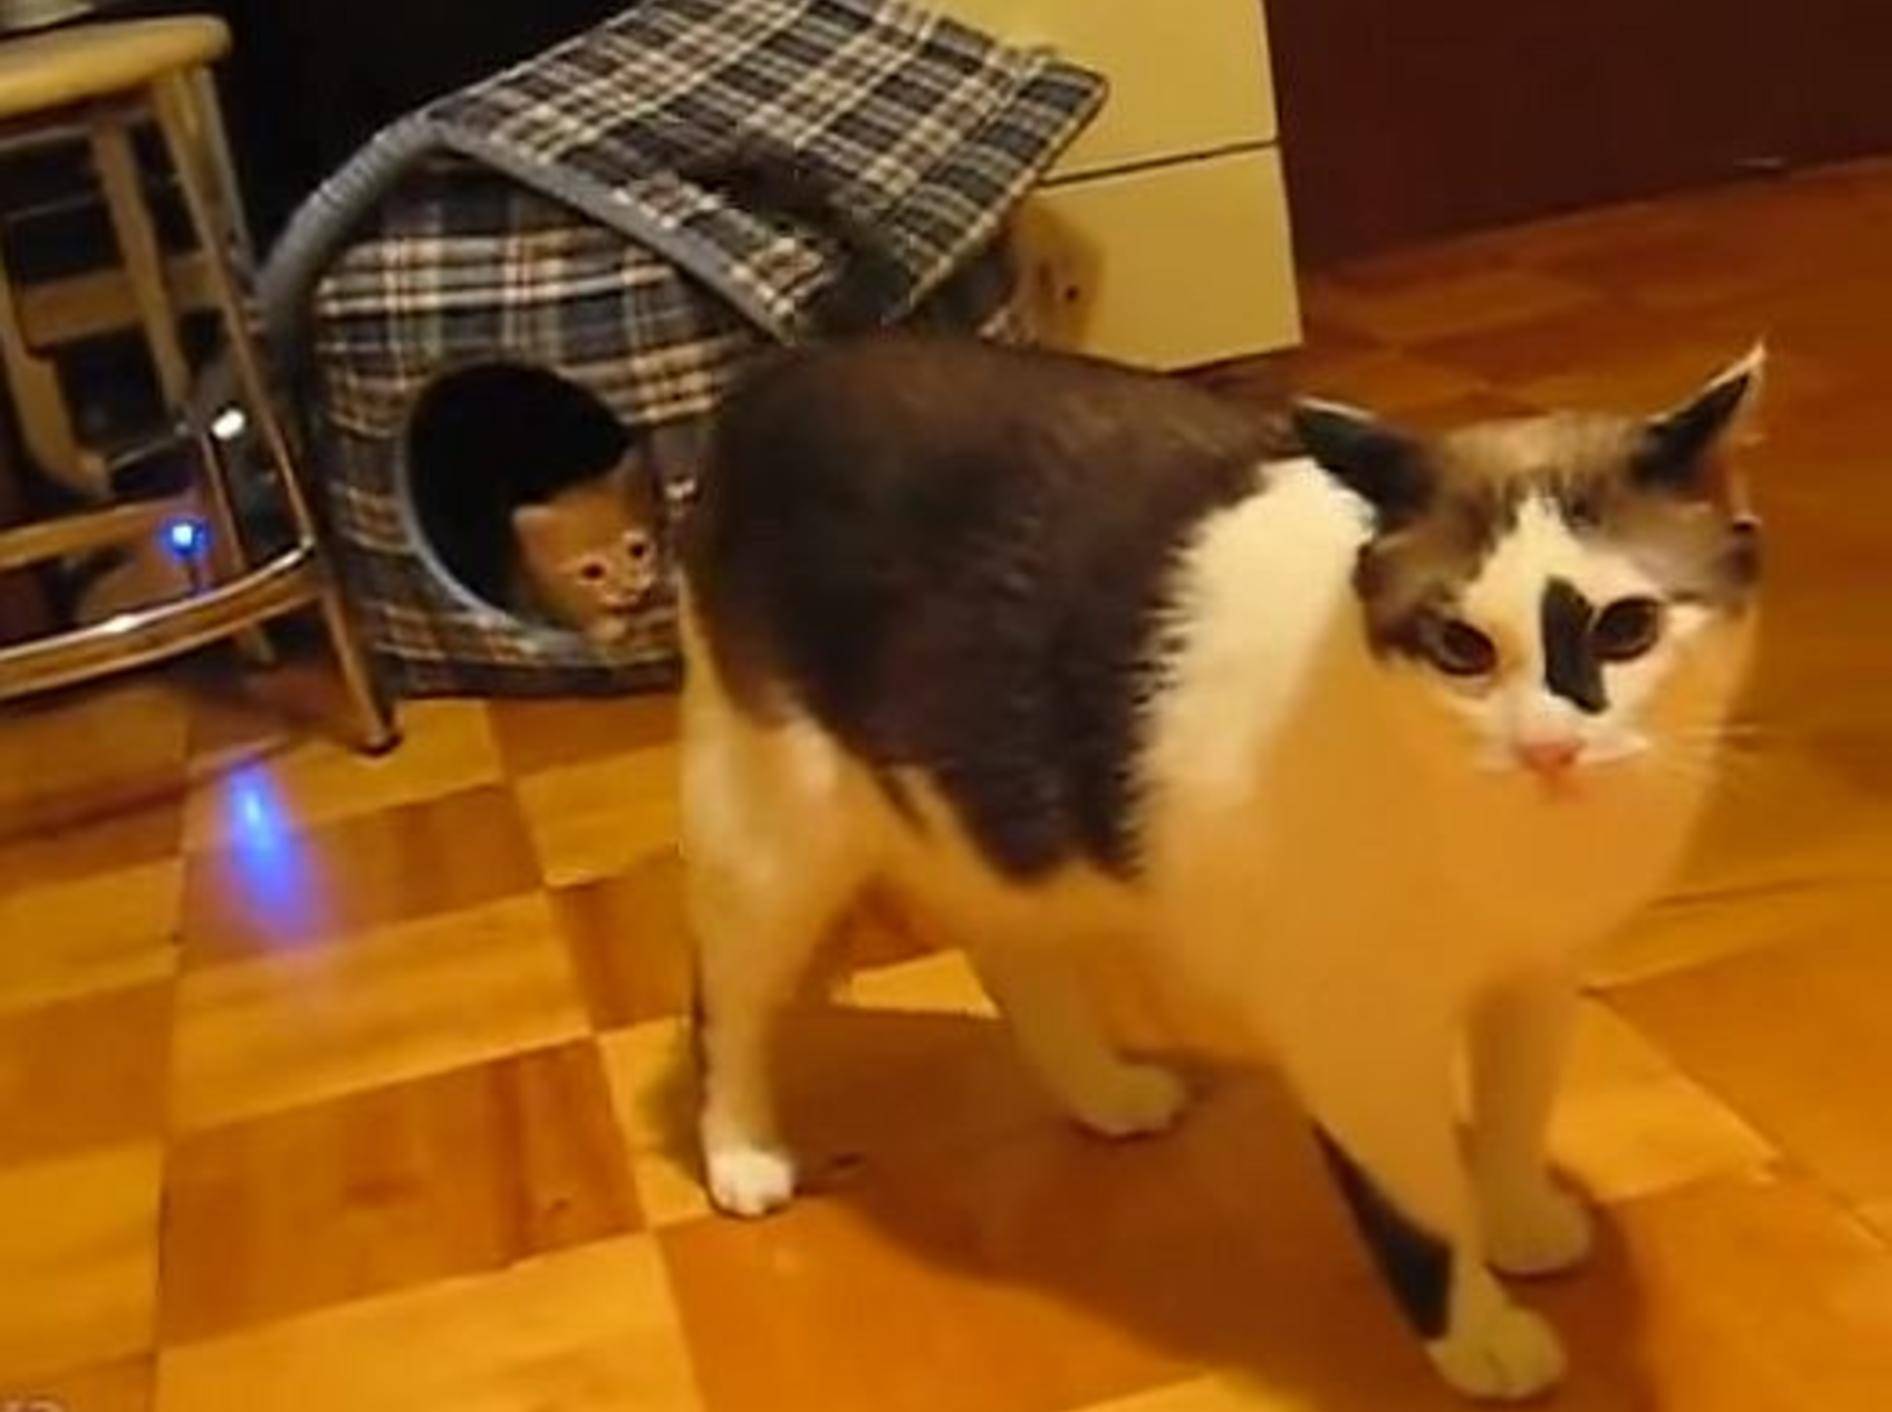 Rotes Katzenbaby: "Das ist mein Haus!!!" – Bild: Youtube / fuwafuwanekochan